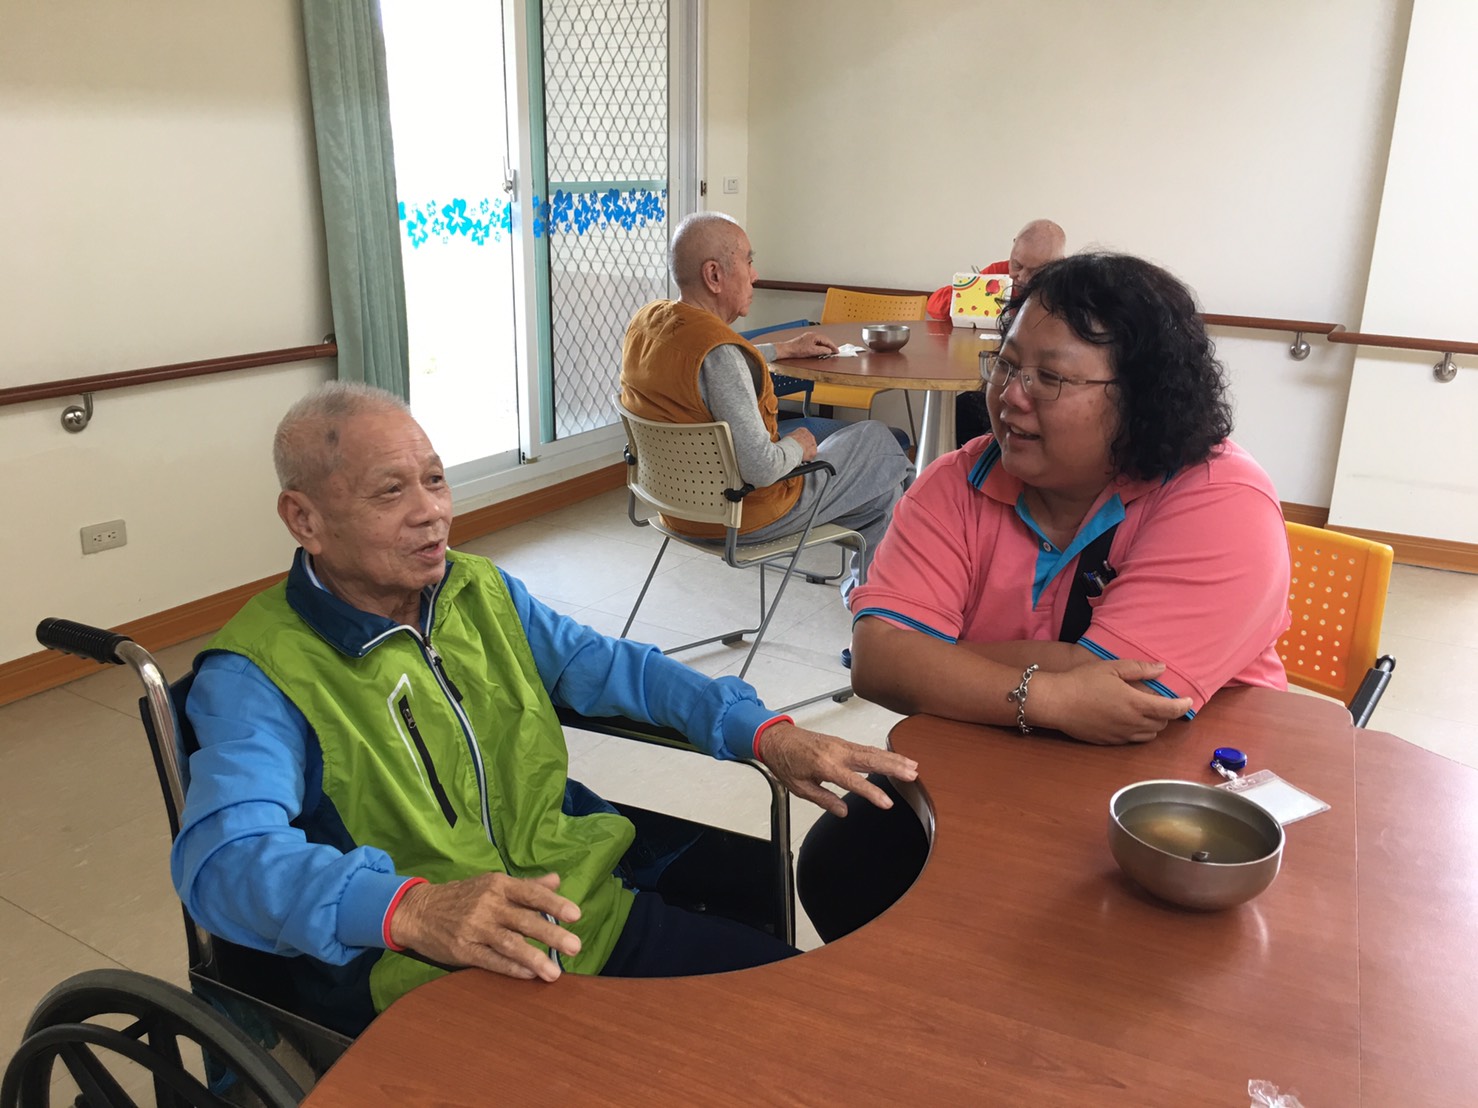 姚堂長透過訪談與輔導給予住民安心。